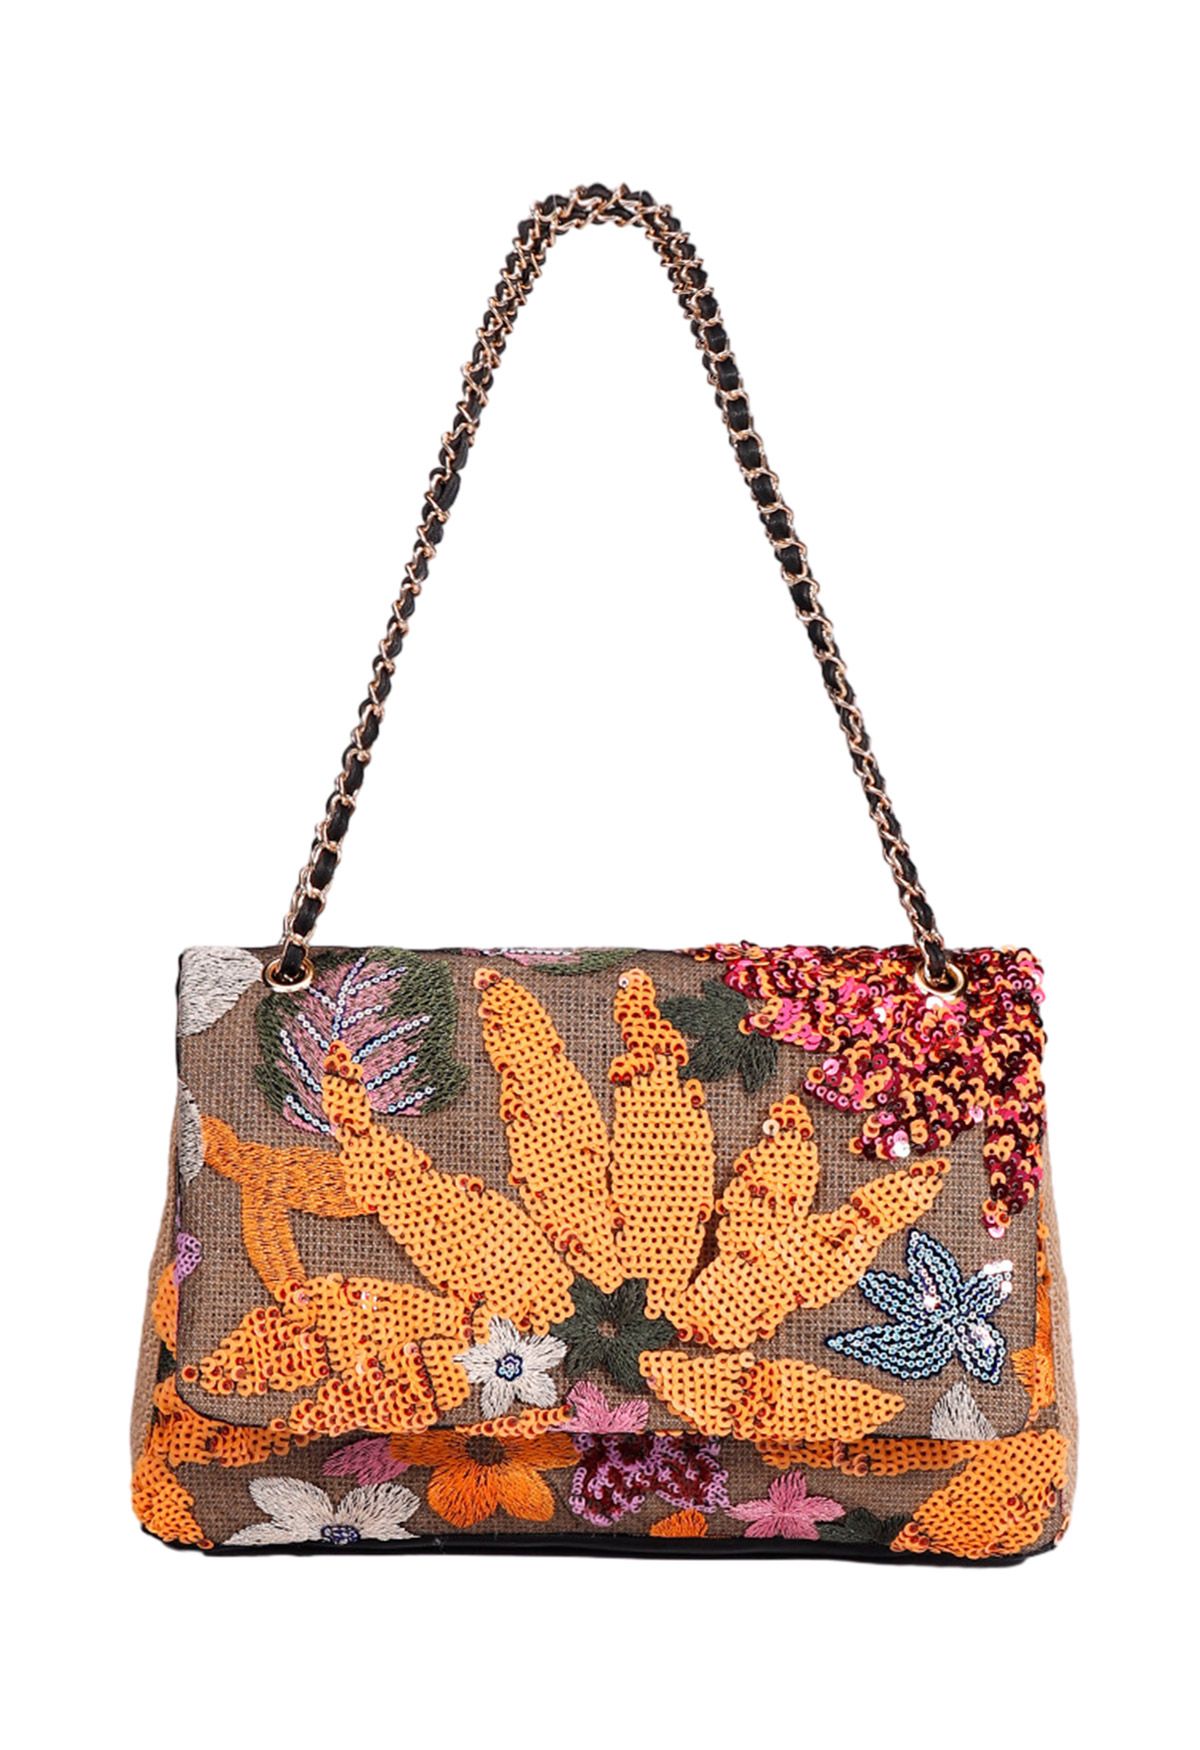 Sequin Floral Embroidered Shoulder Bag in Orange